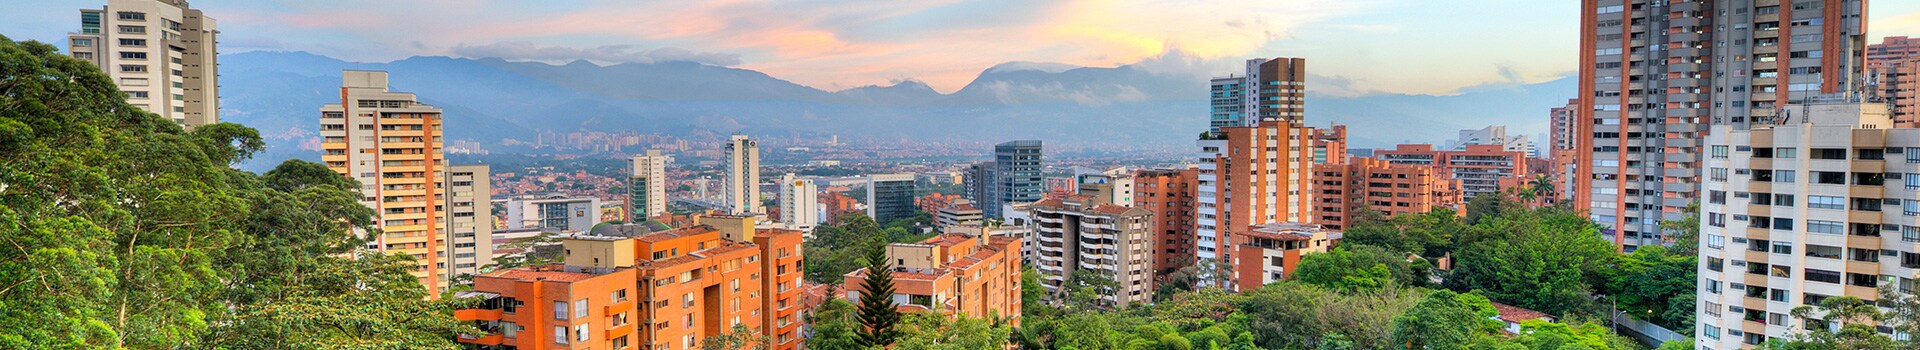 Barcelona - Medellín - jose marie cordova